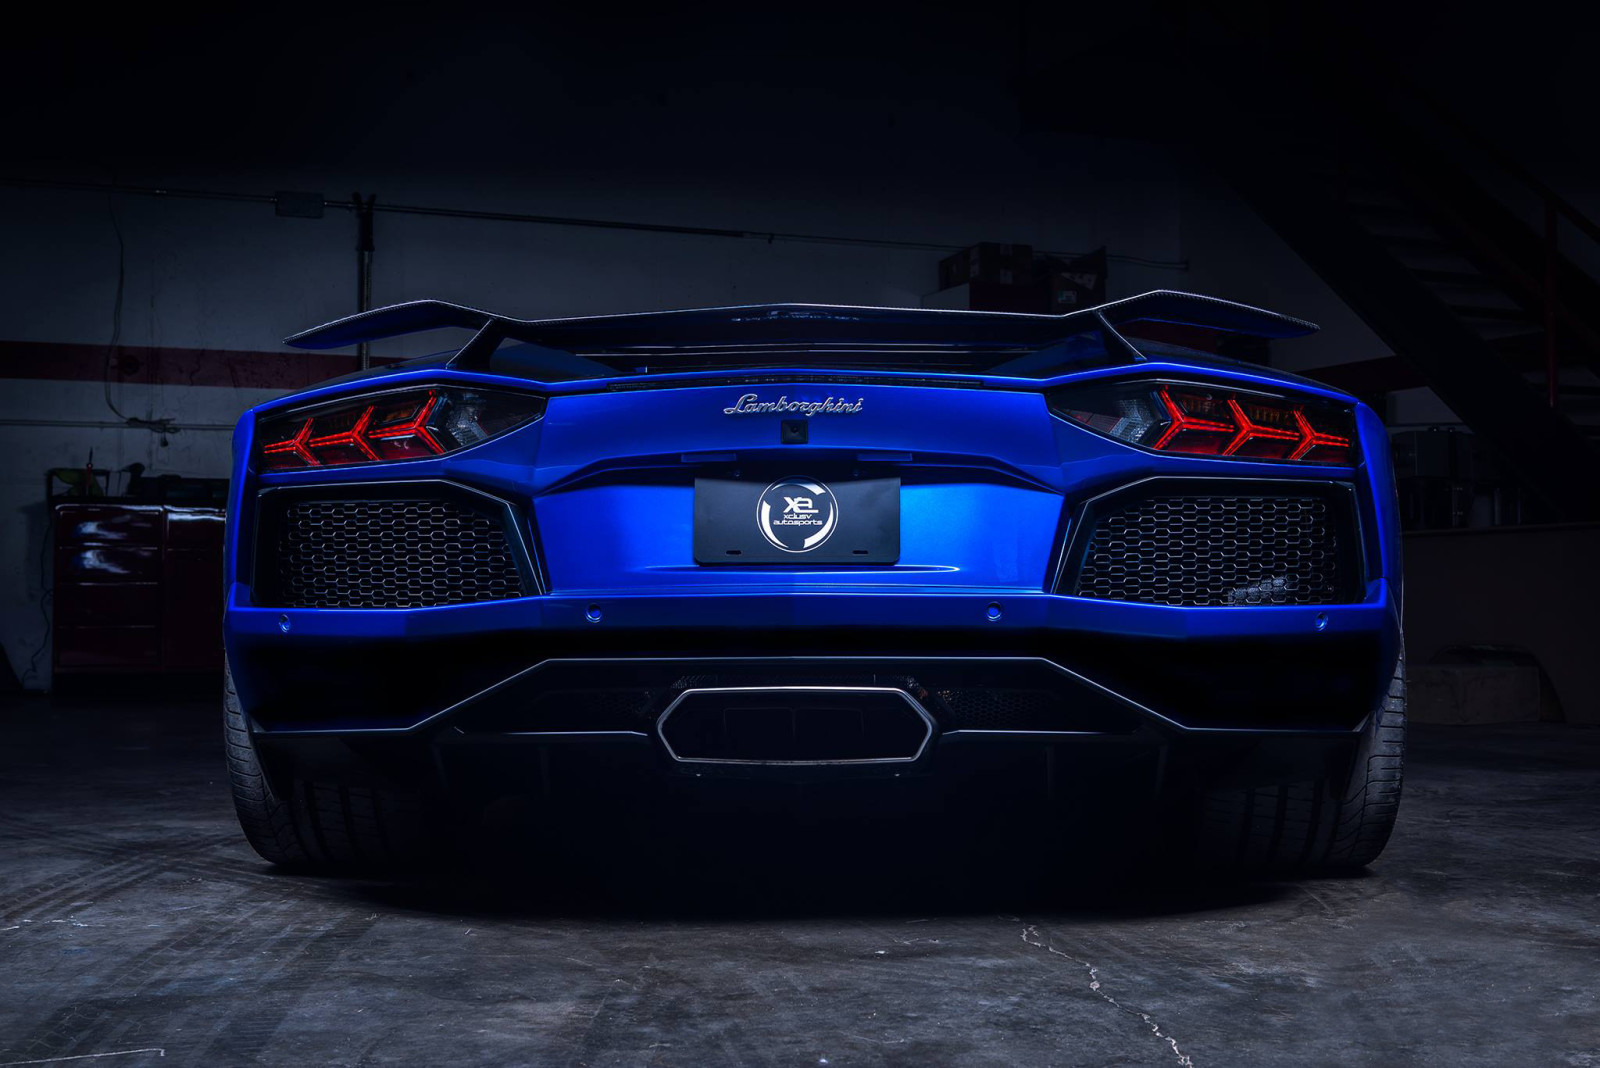 biru, Lamborghini, supercar, Aventador, Belakang, LP700-4, Spoiler, Matte